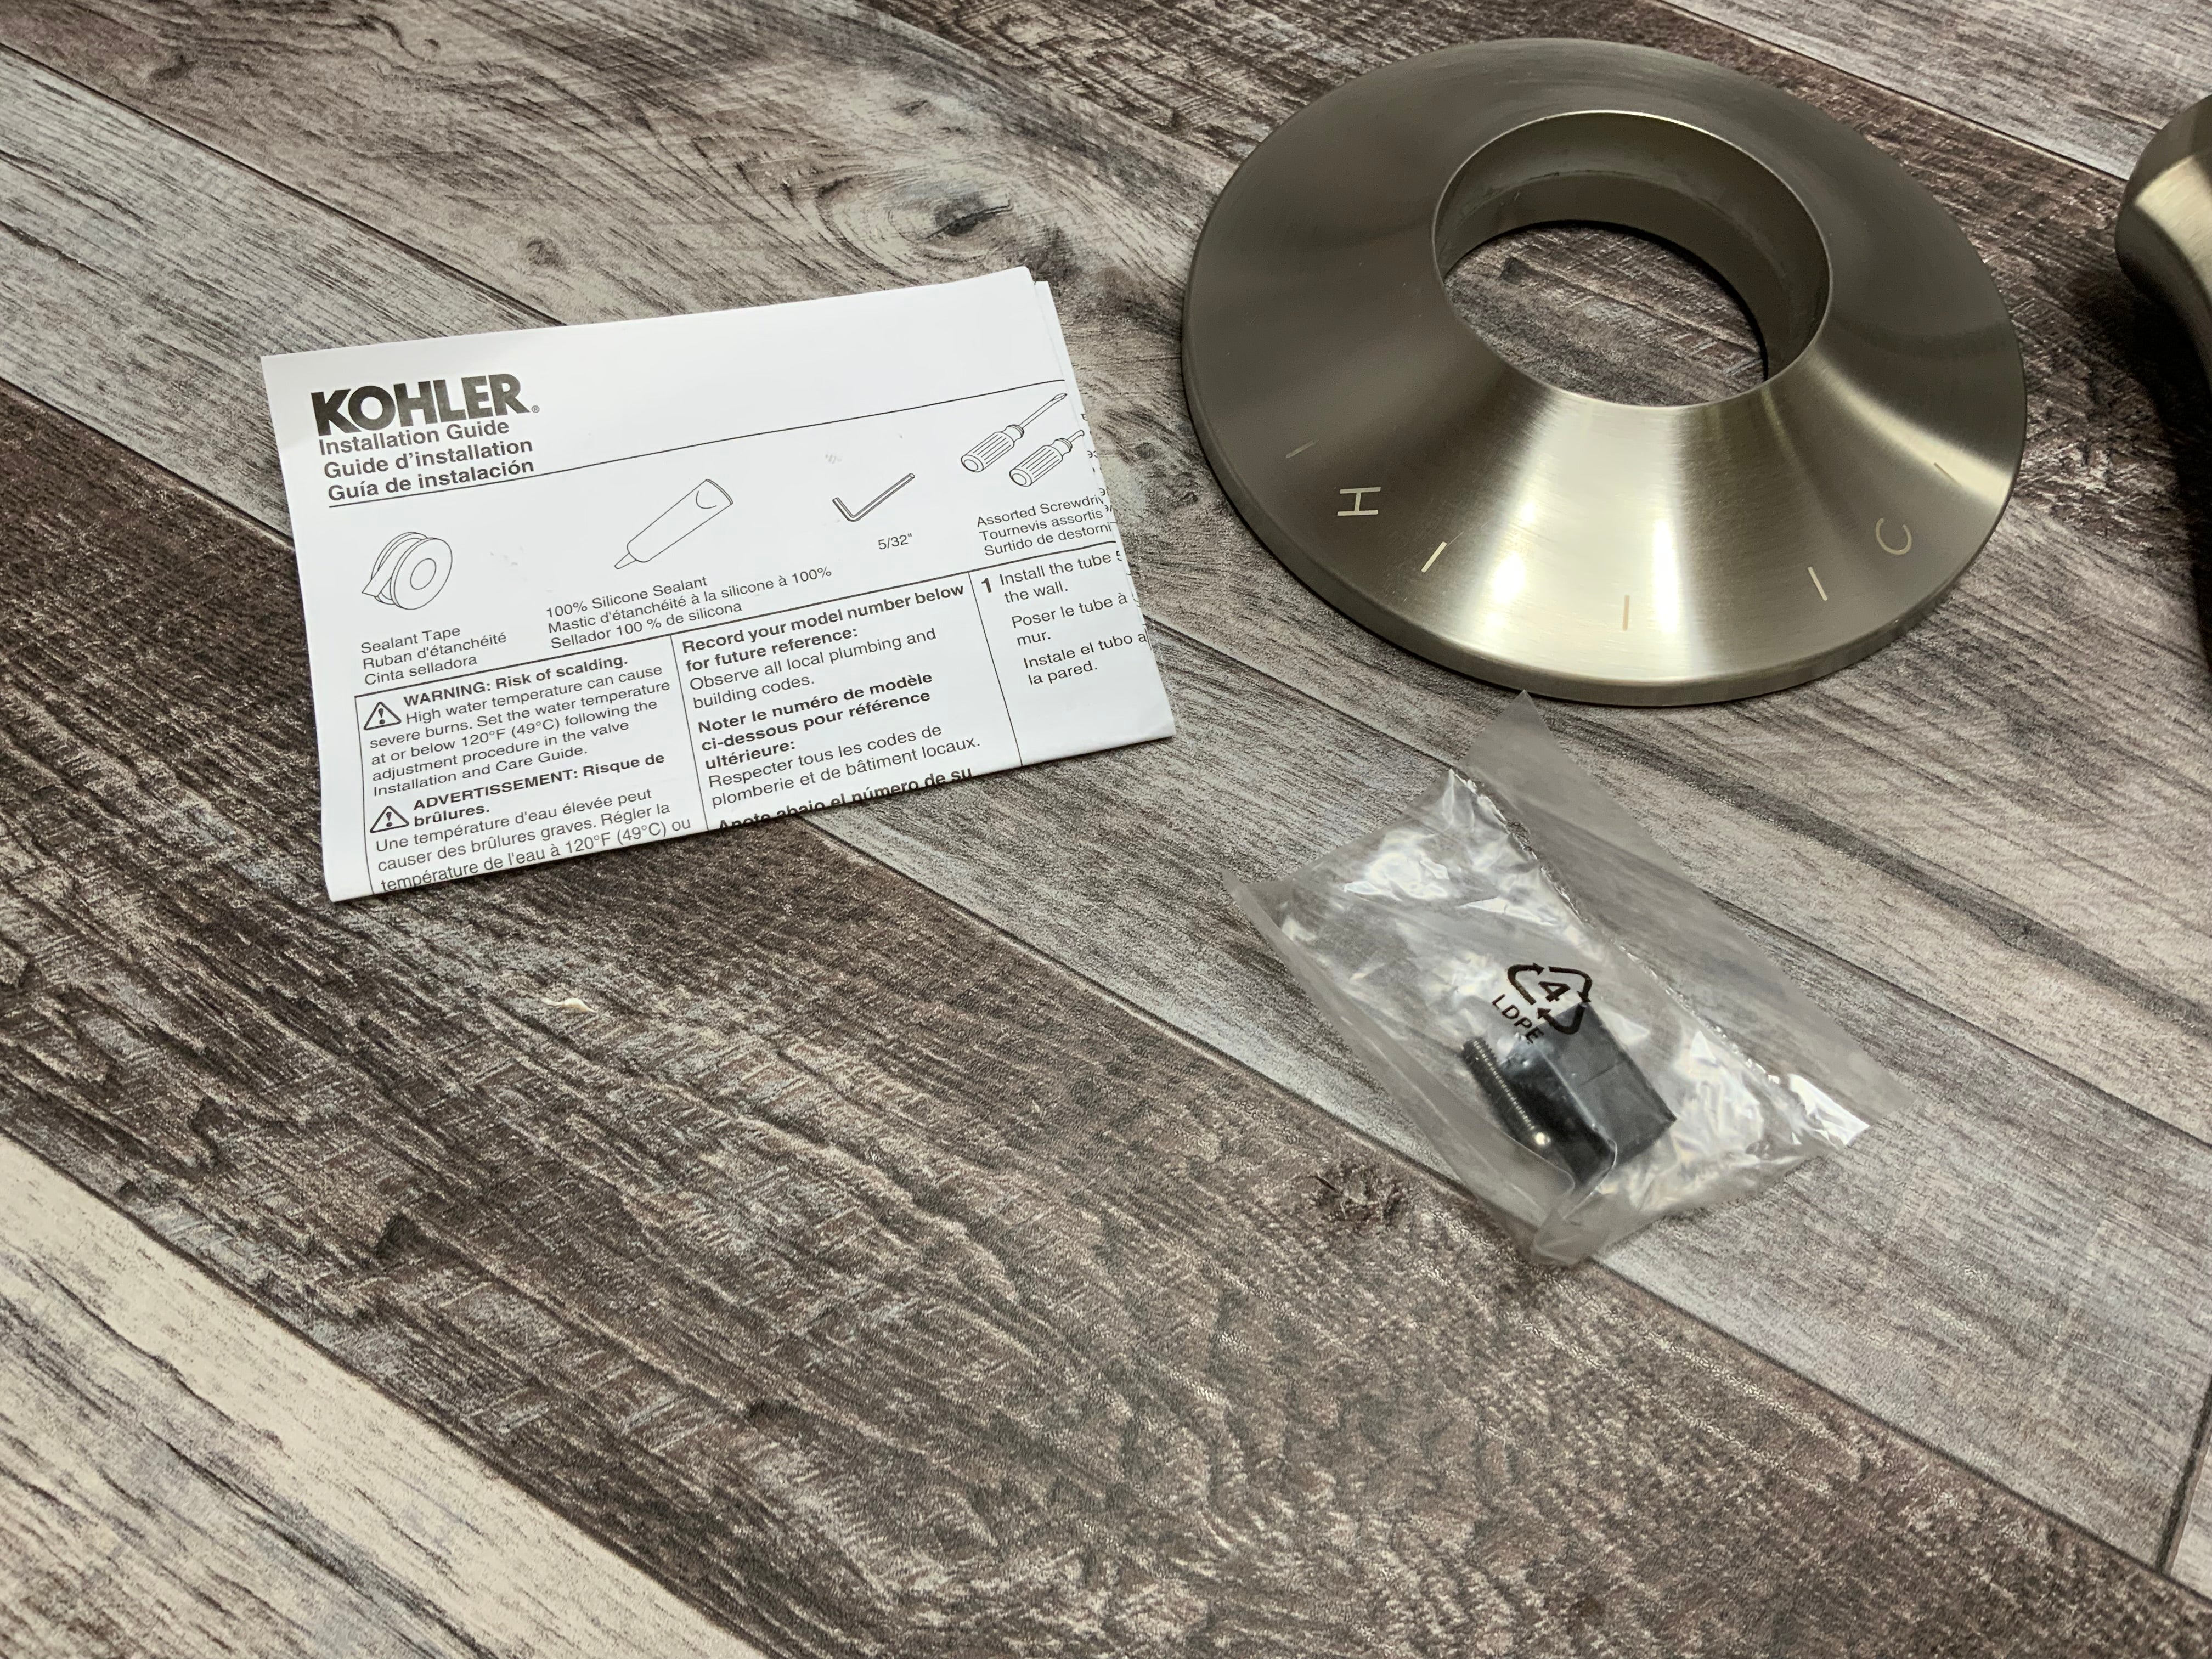 Kohler K-TS24617-4-BN Tempered Shower Trim Set, Vibrant Brushed Nickel (8216607260910)